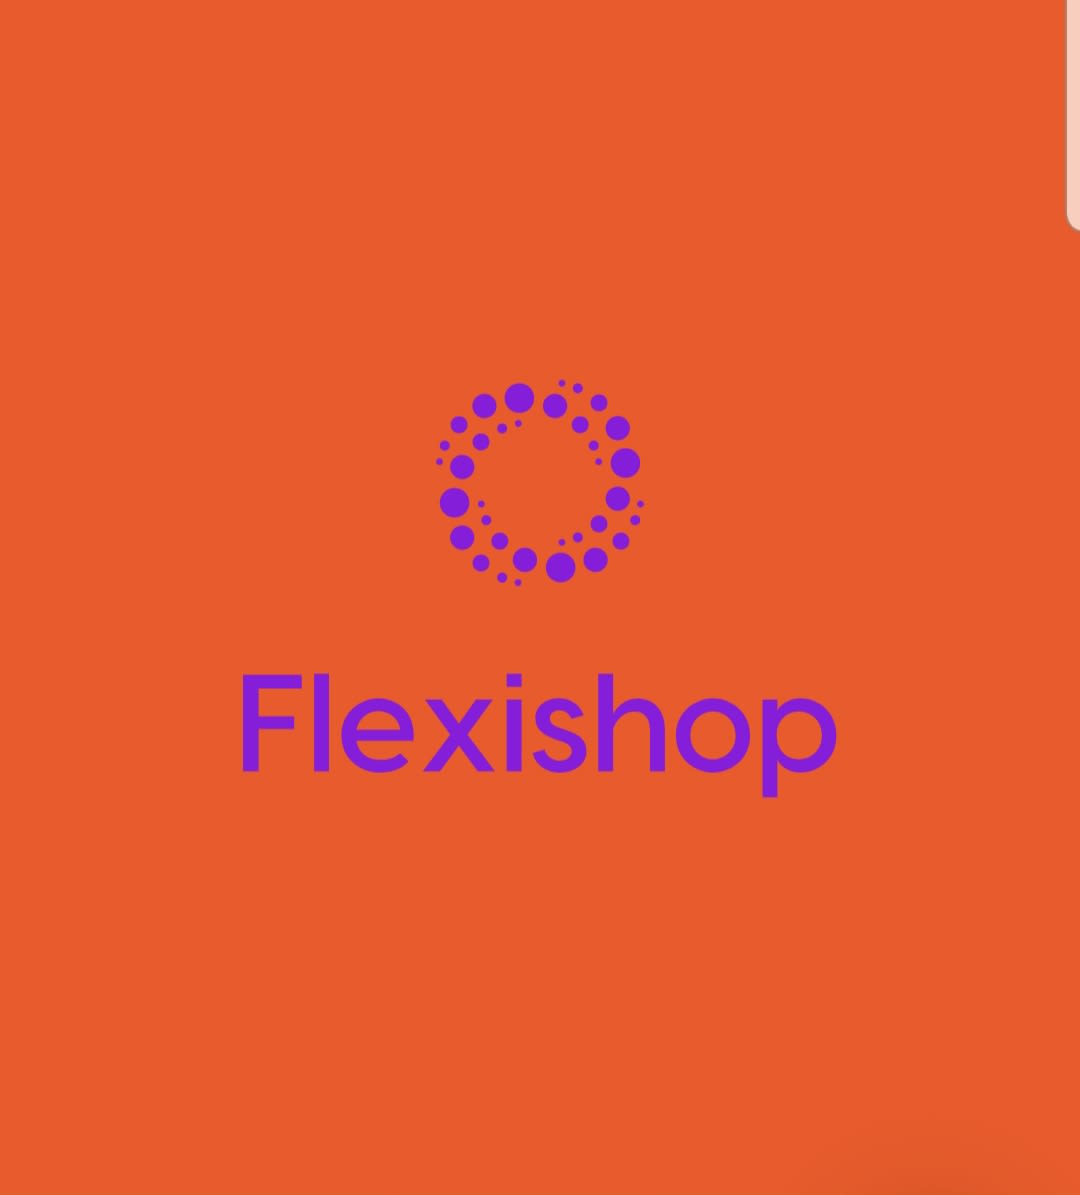 Flexishop